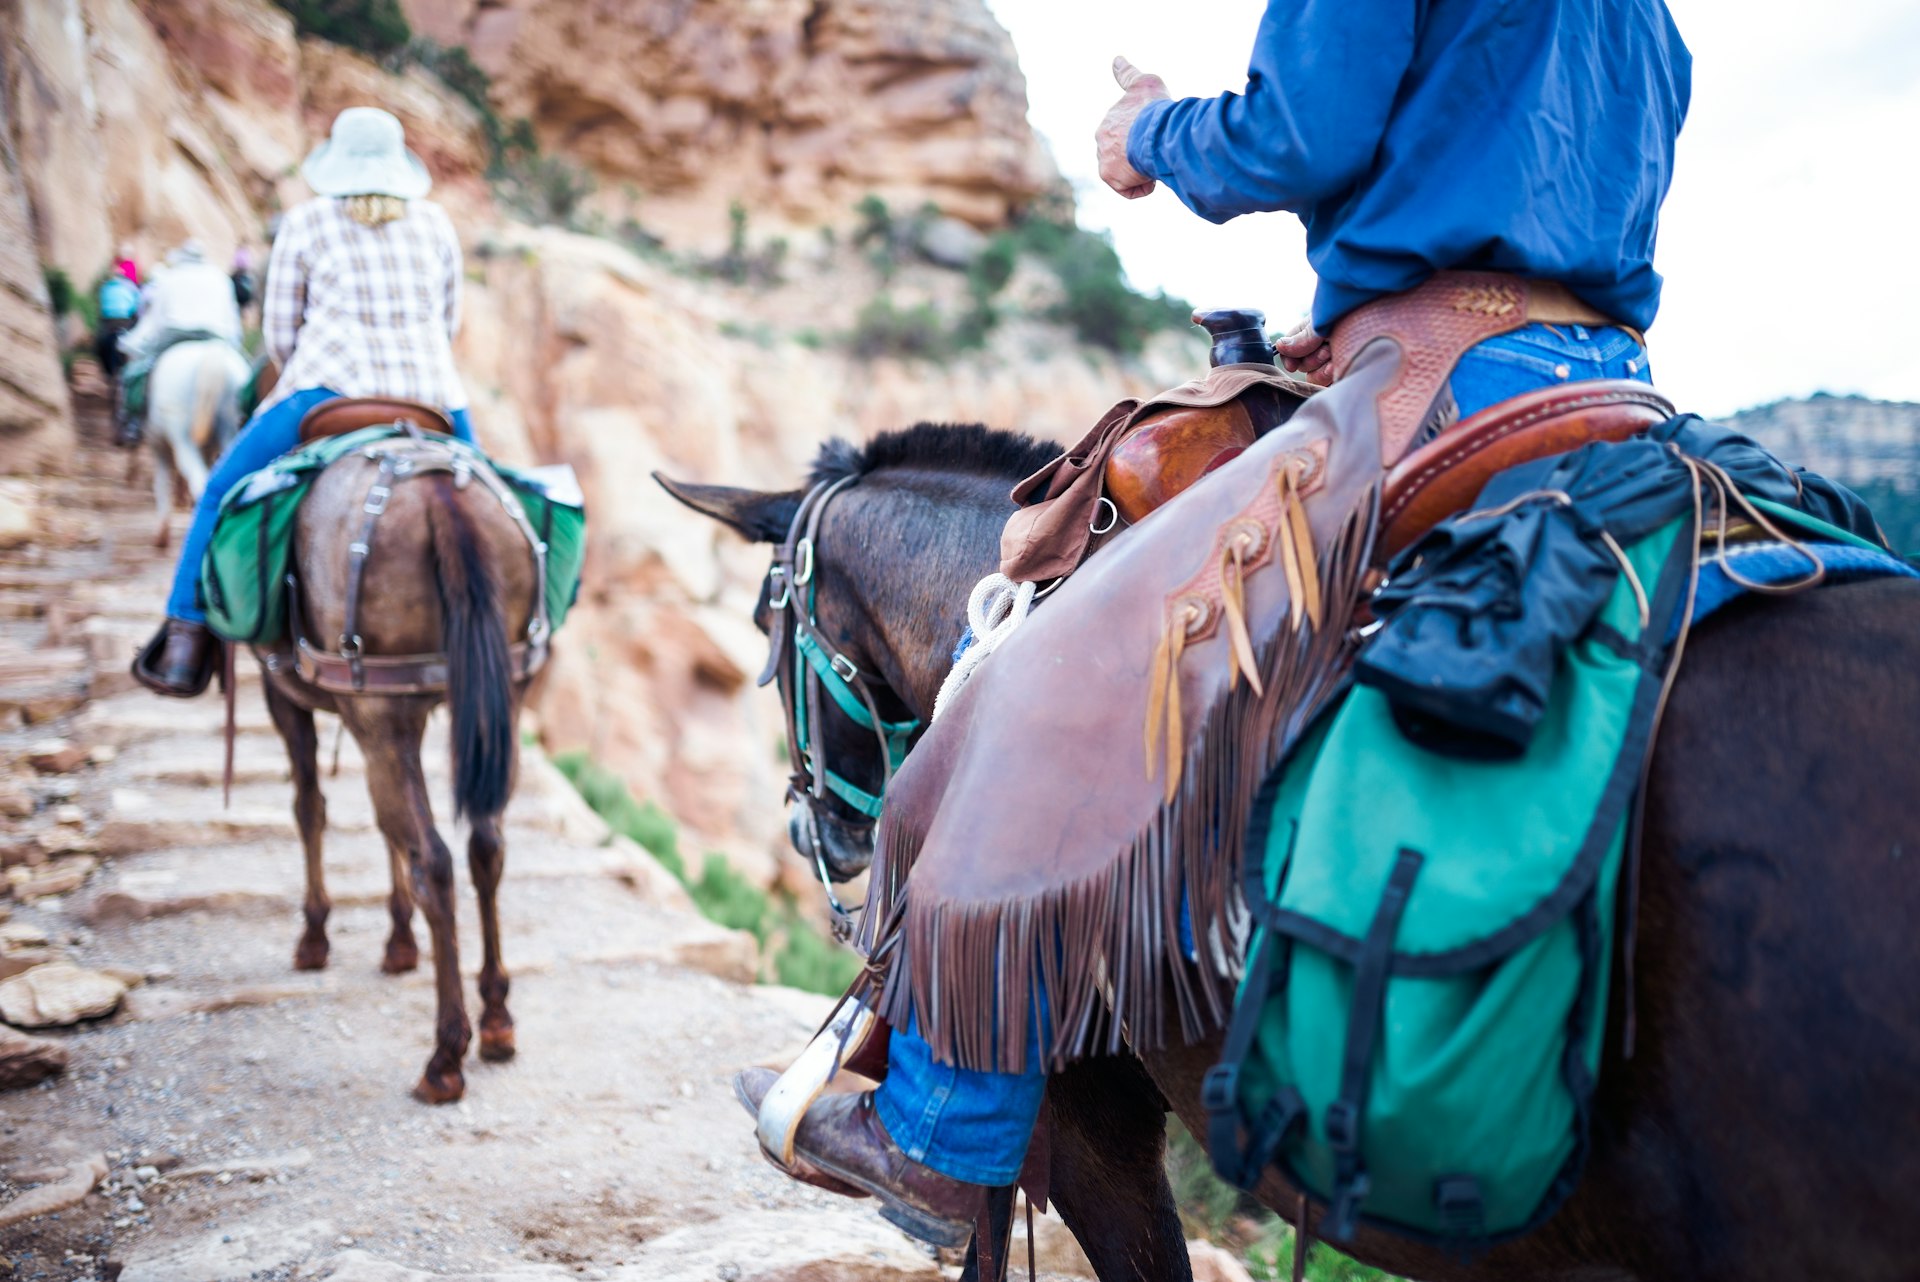 Riding on horseback through a canyon